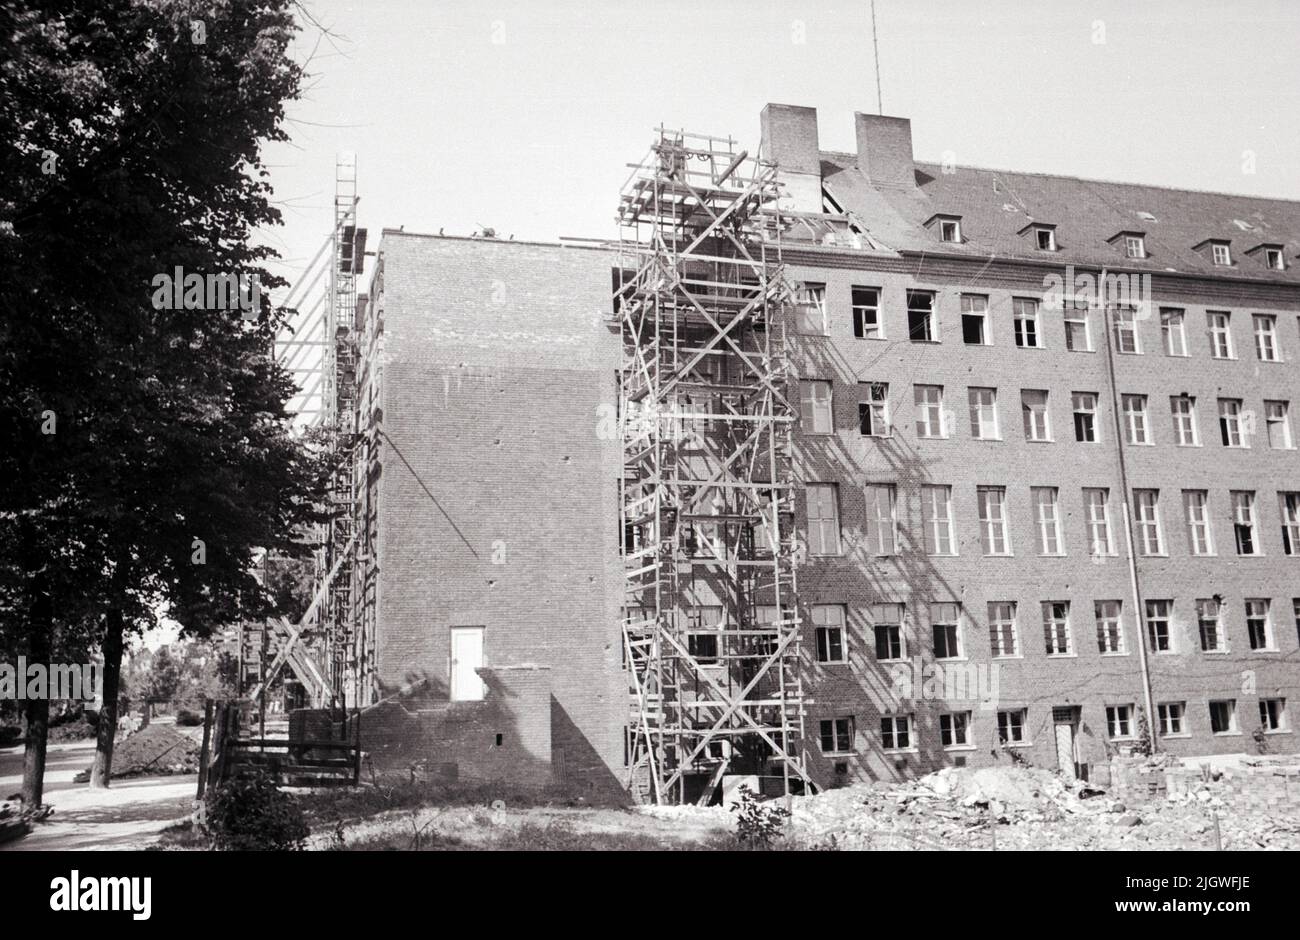 Nordwestdeutscher Rundfunk - Im Wiederaufbau: Richtfest am Gebäude des Nordwestdeutschen Rundfunks am Heidelberger Platz 3 in Berlin, Deutschland 1947. Stock Photo